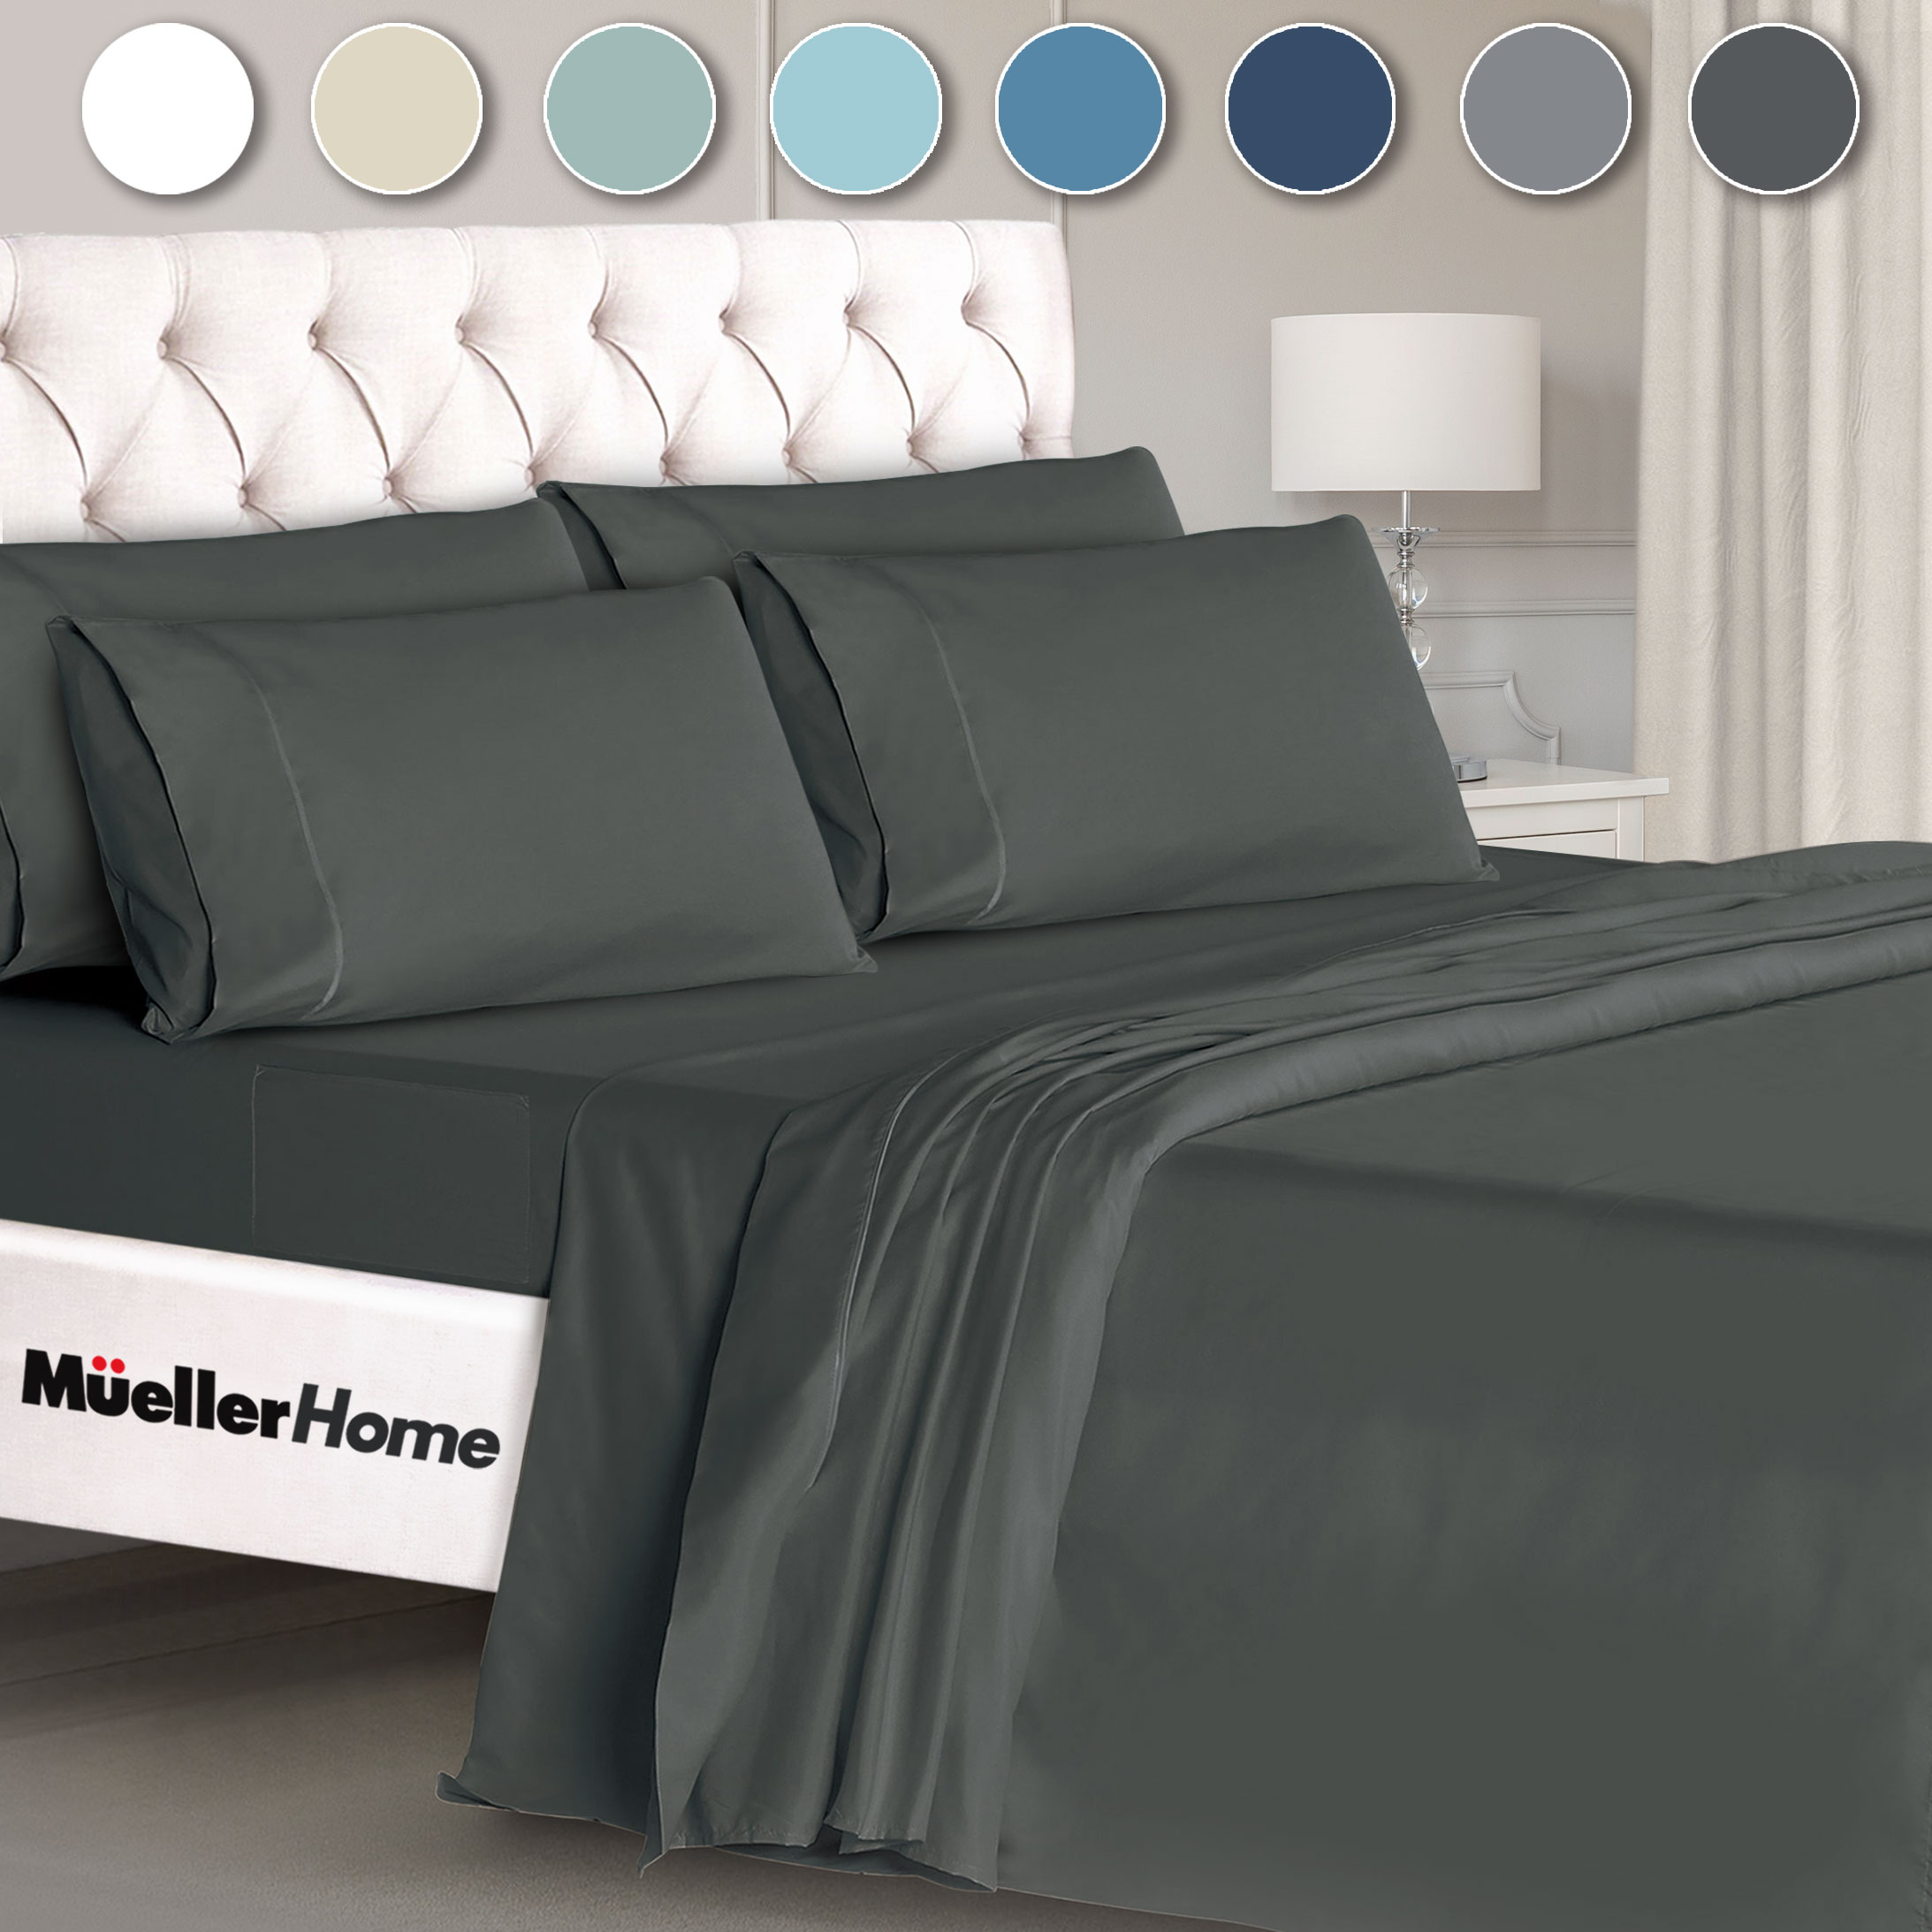 muellerhome_Premium-Hotel-Collection-6-Piece-FULL-SIZE-Sheet-Set-Dark-Gray